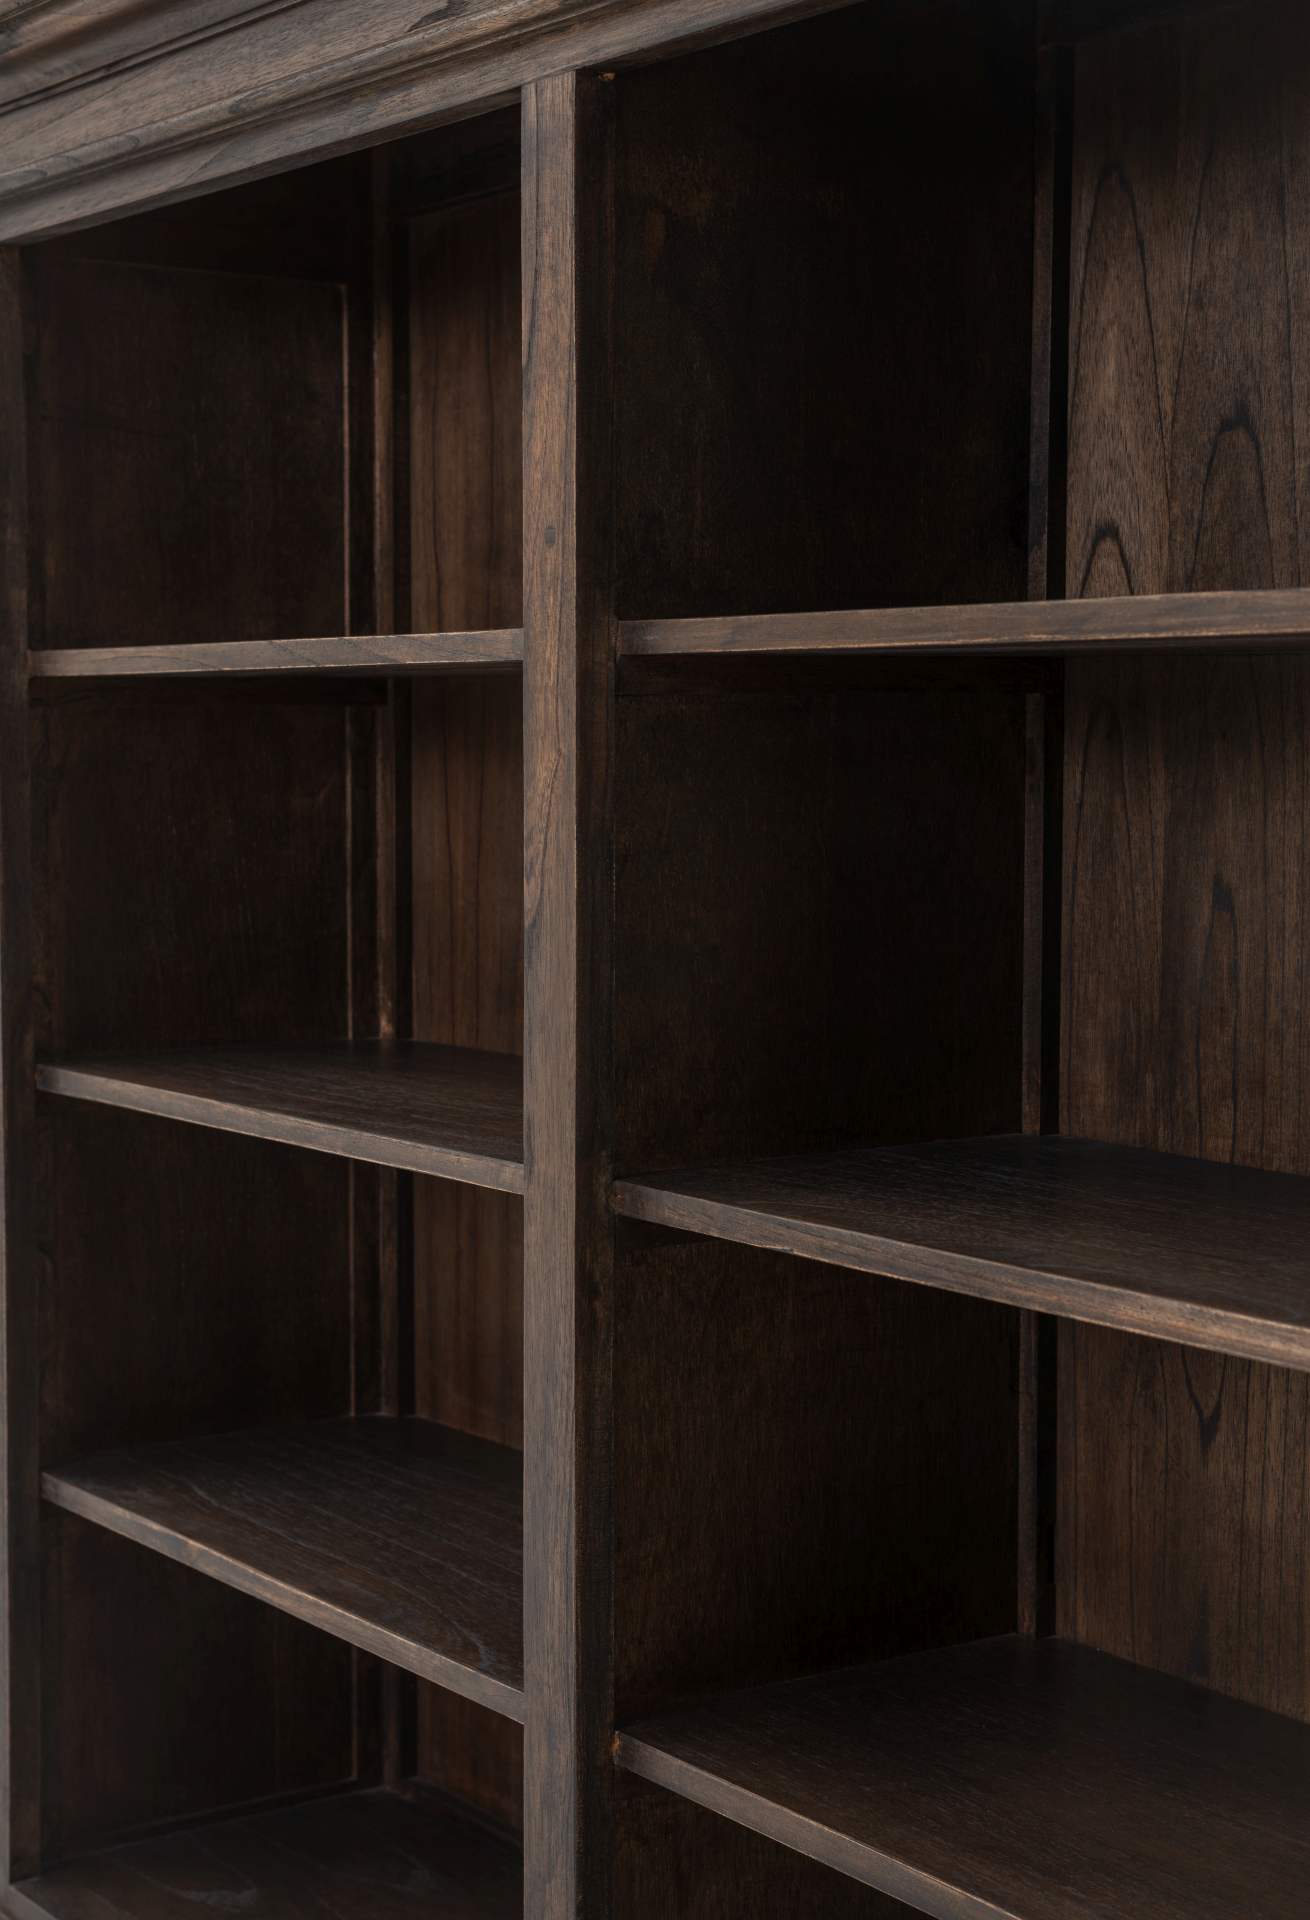 Der Bücherschrank Halifax Mindi überzeugt mit seinem Landhaus Stil. Gefertigt wurde er aus Mindi Holz, welches einen braunen Farbton besitzt. Der Schrank verfügt über vier Türen, zwei Schubladen und acht offene Fächer. Die Breite beträgt 160 cm.